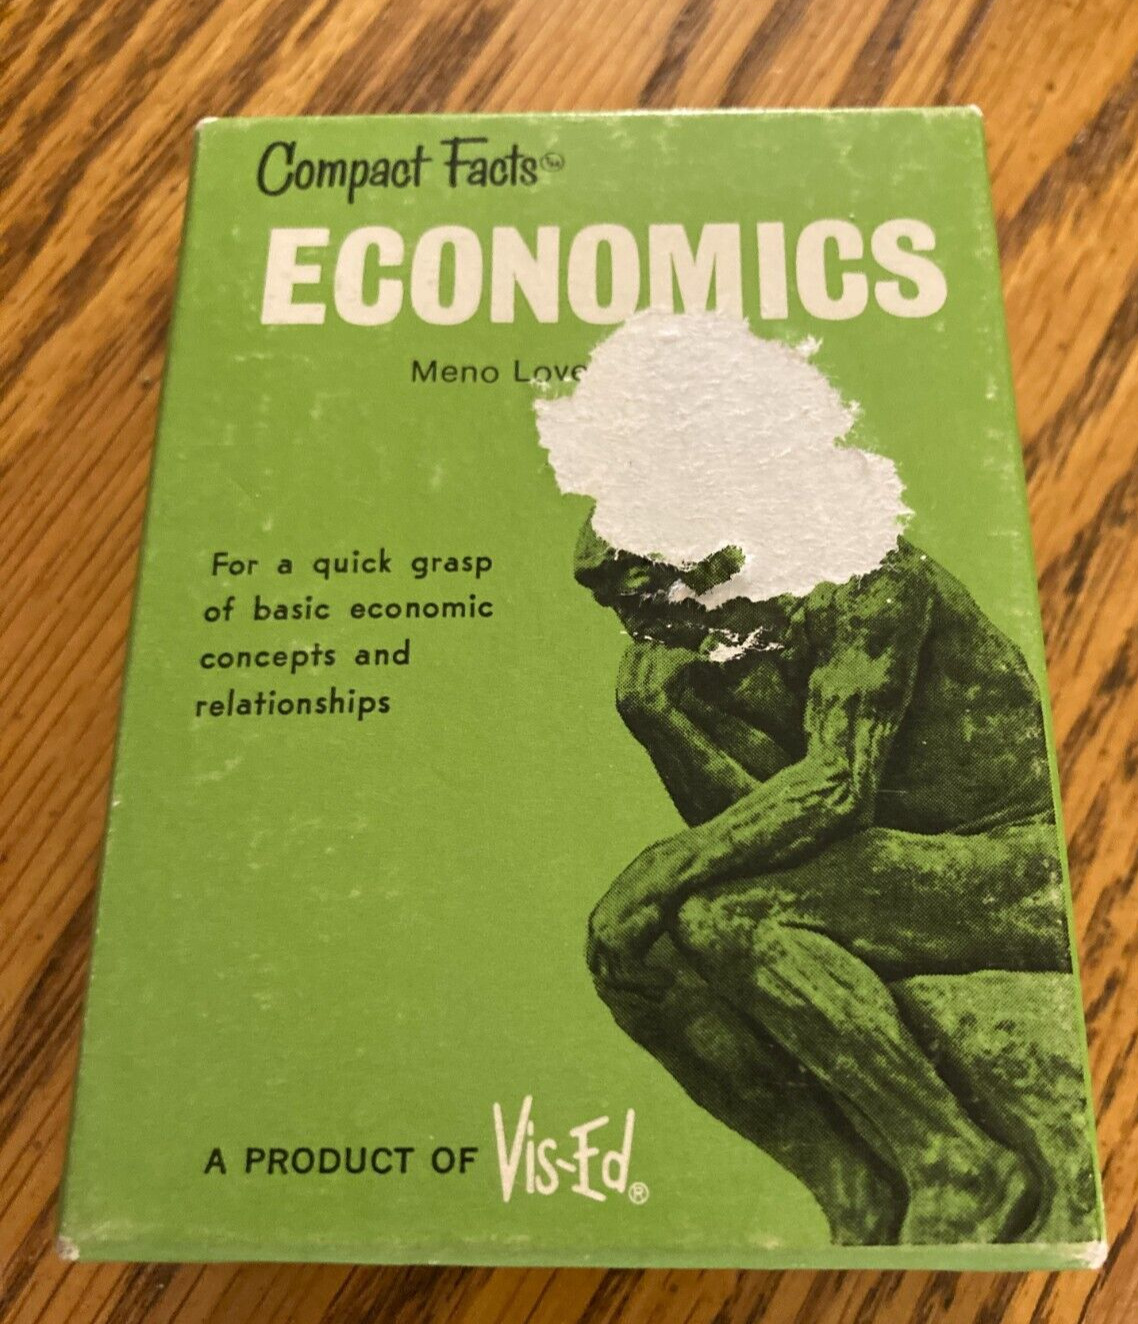 Vintage Vis-Ed Visual Education Compact Facts ECONOMICS Card Set 